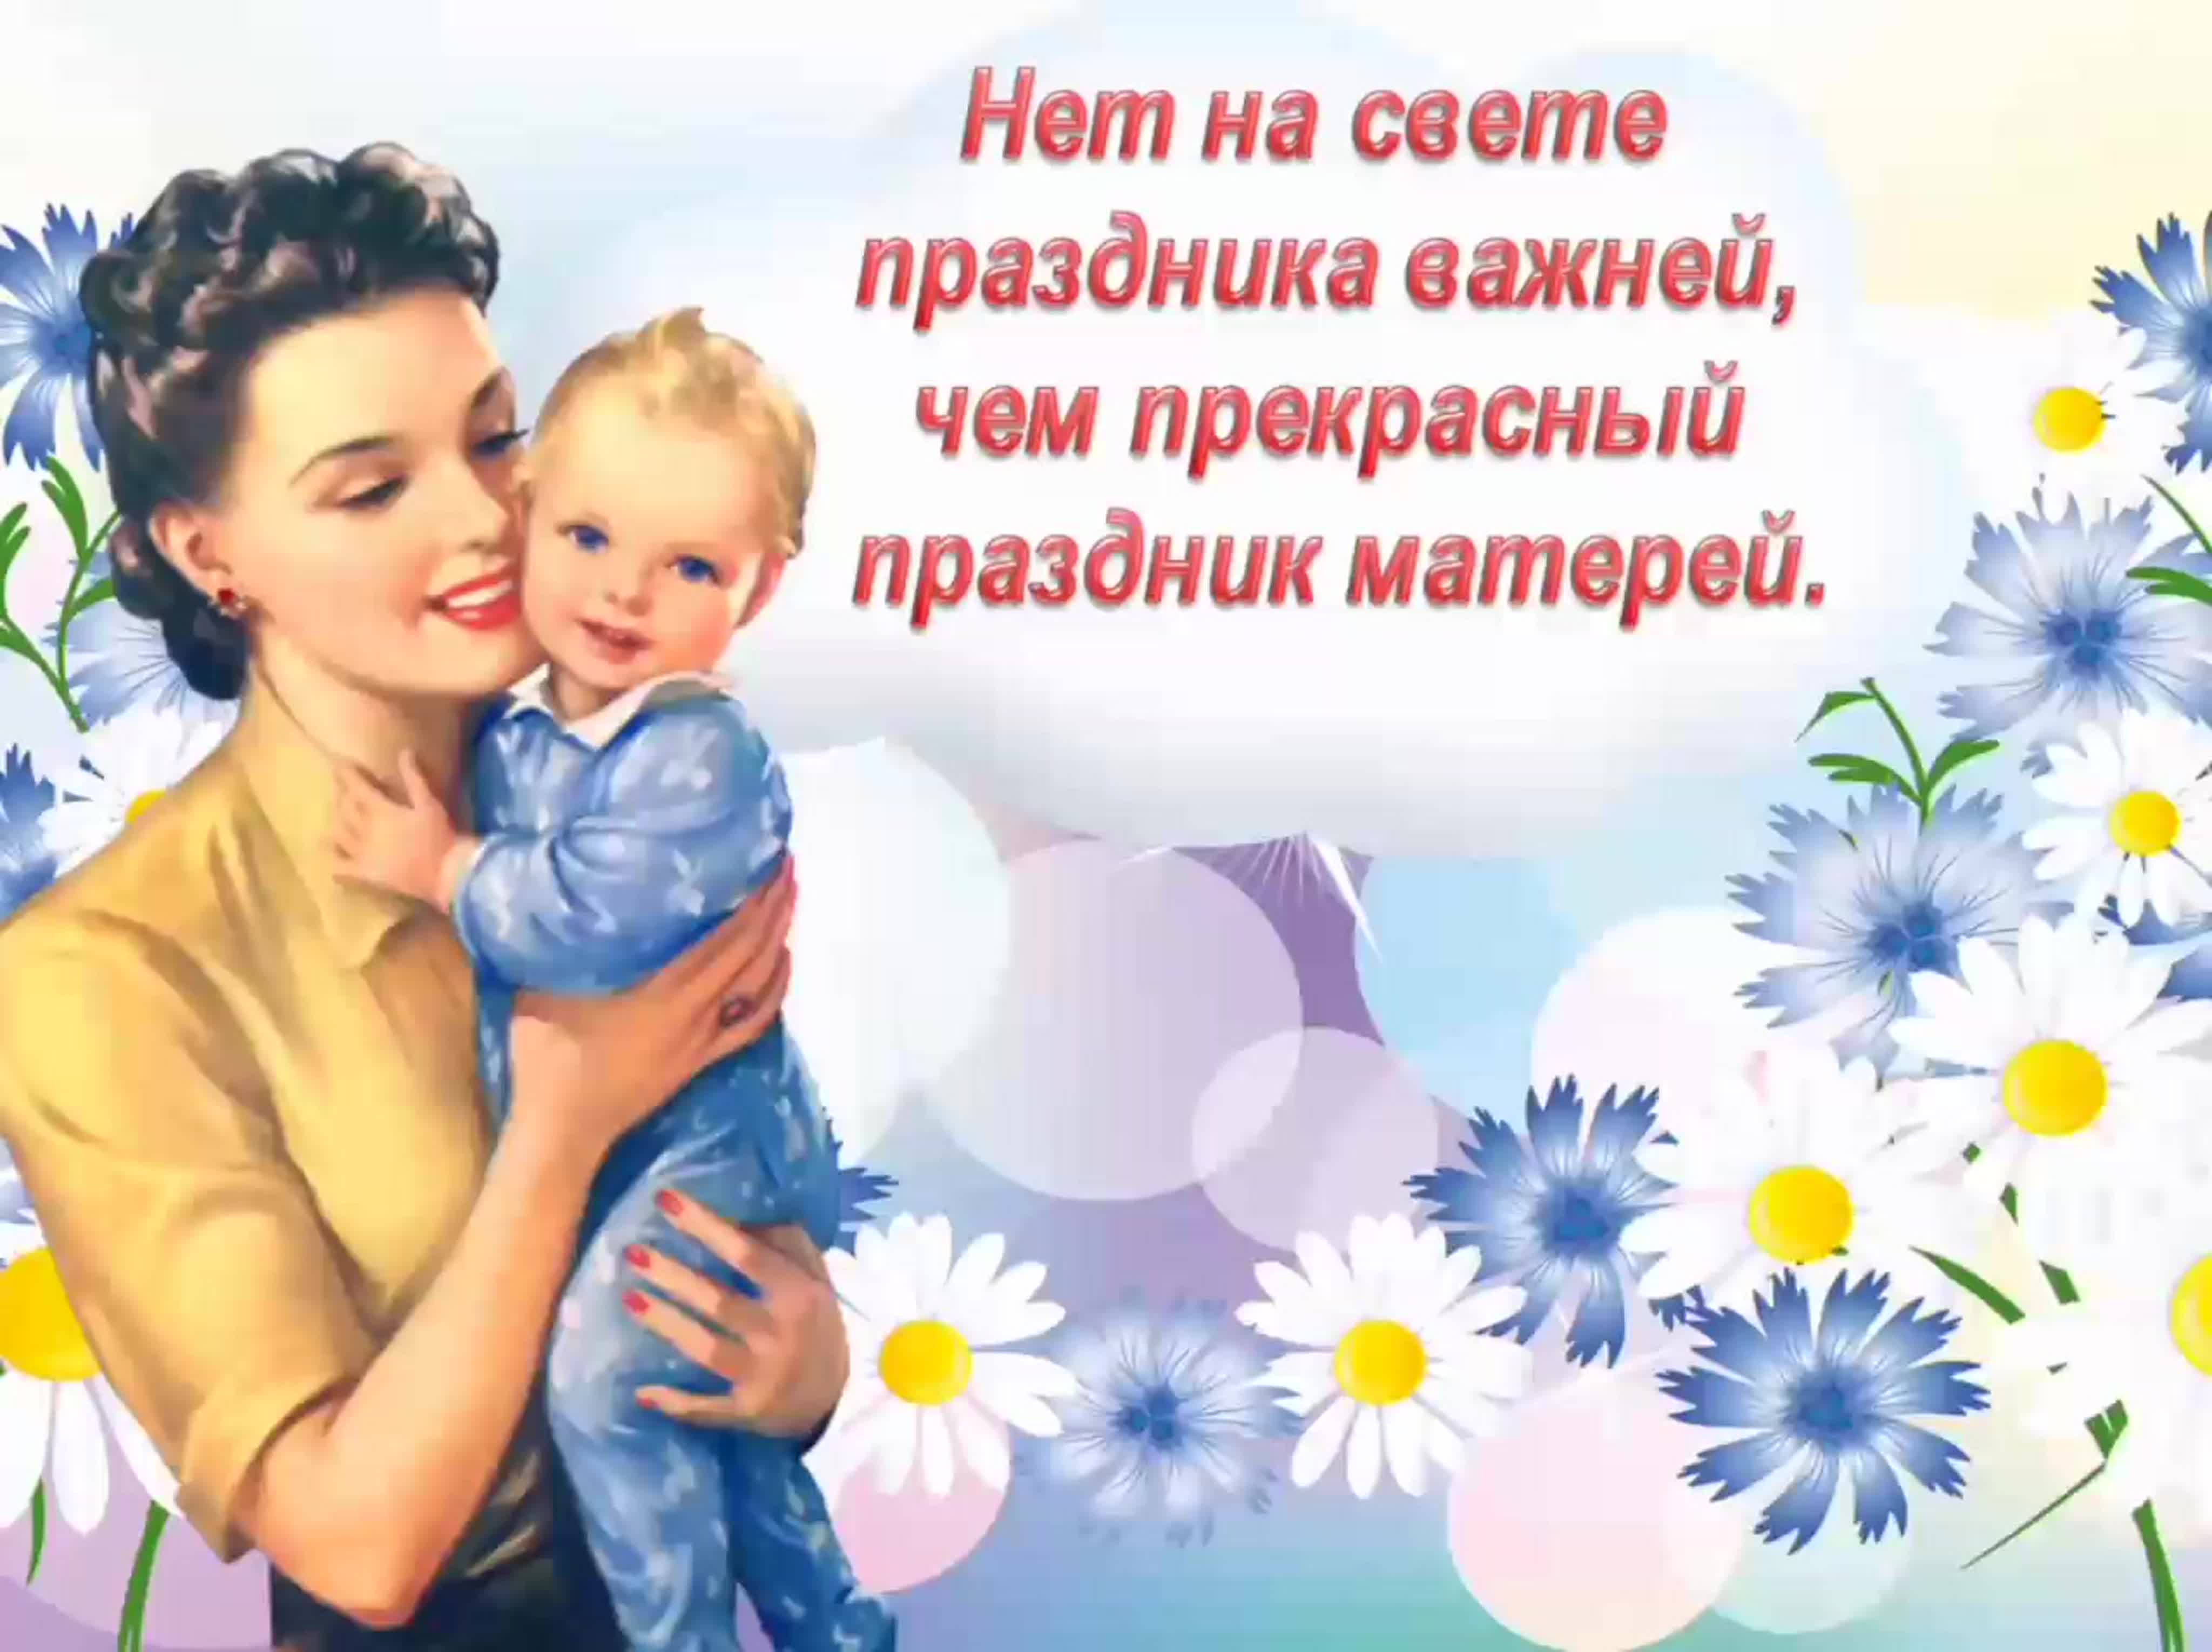 как празднуют день матери в россии